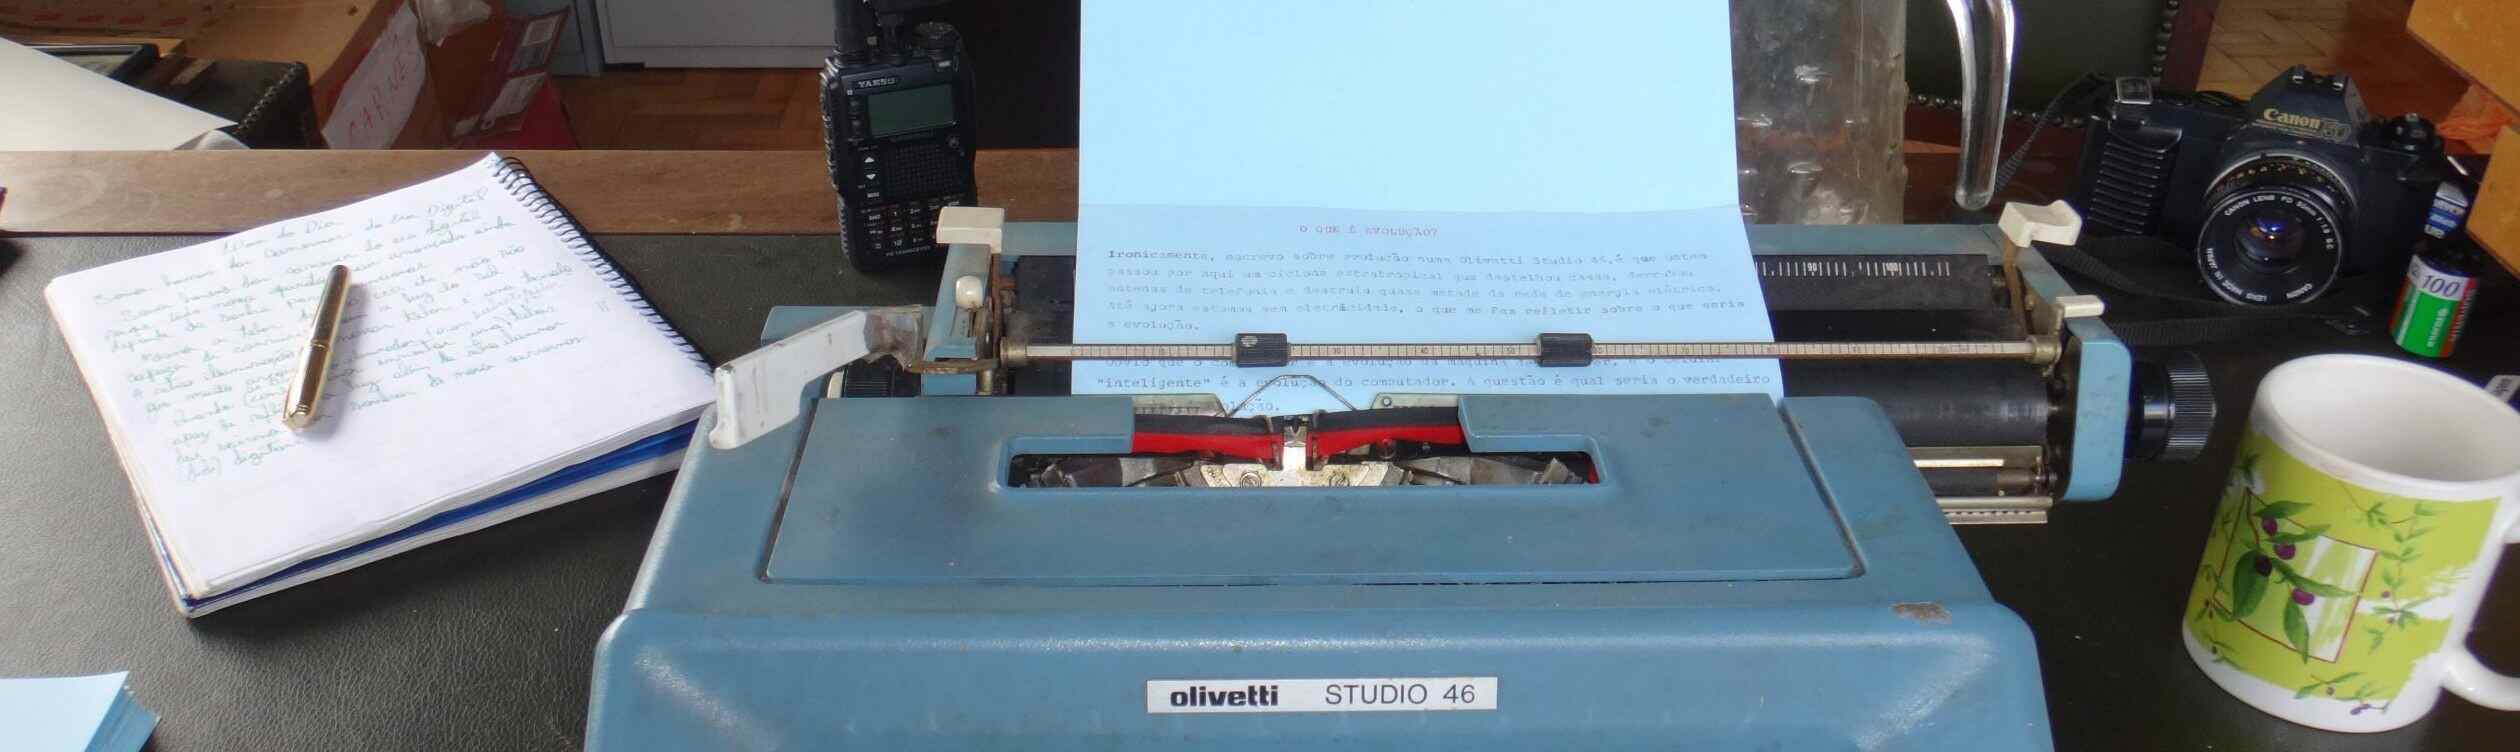 Homenagem à máquina de escrever